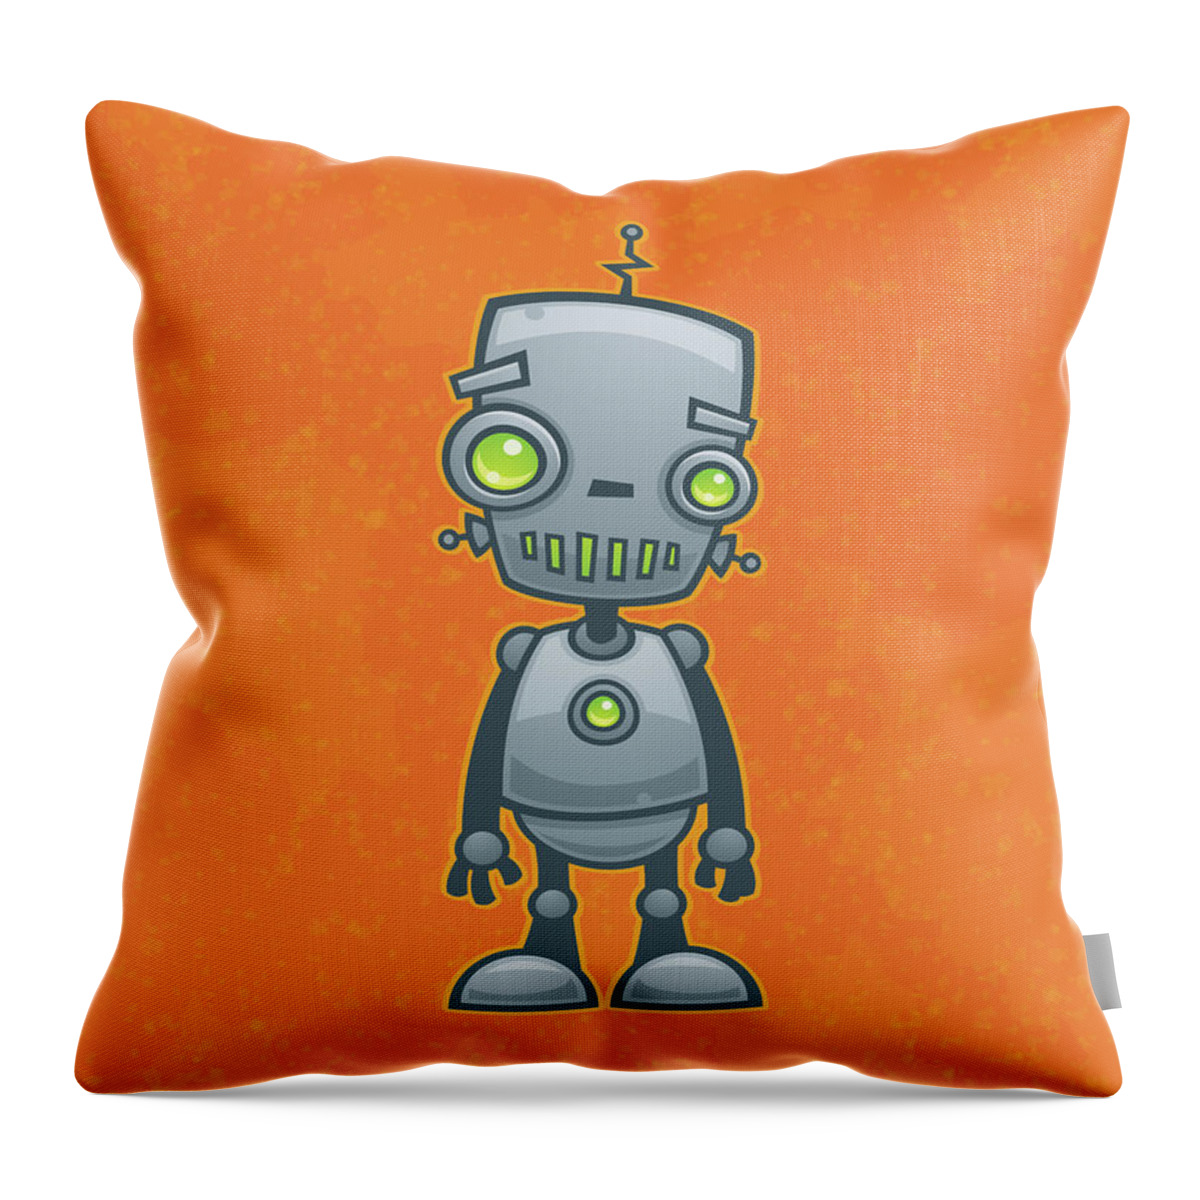 Robot Throw Pillow featuring the digital art Happy Robot by John Schwegel